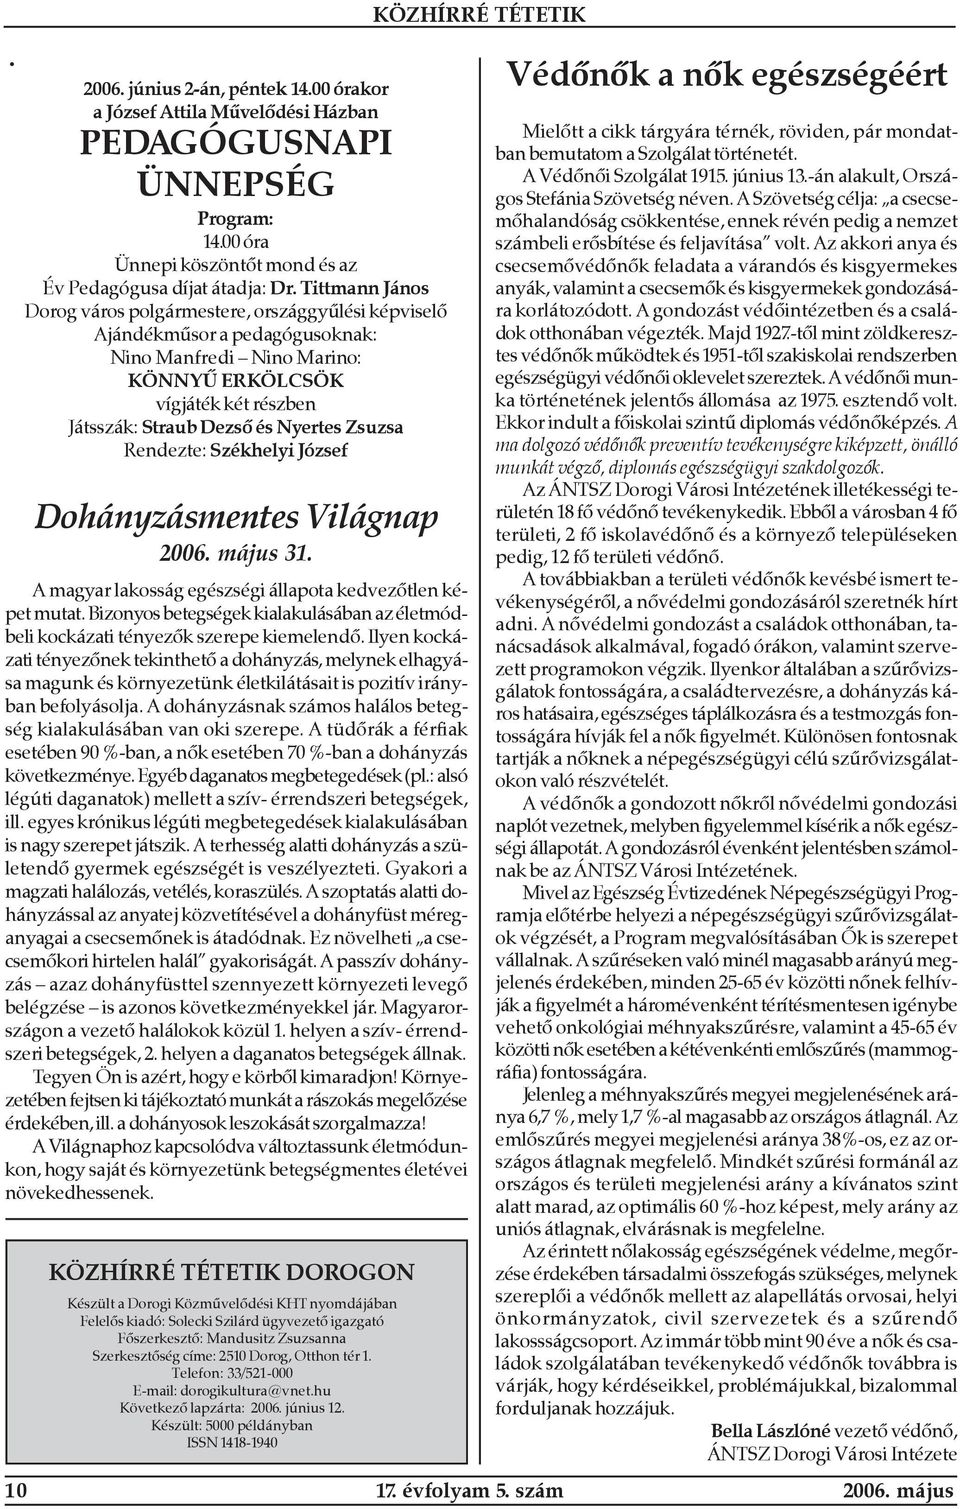 Zsuzsa Rendezte: Székhelyi József Dohányzásmentes Világnap 2006. május 31. A magyar lakosság egészségi állapota kedvezõtlen képet mutat.